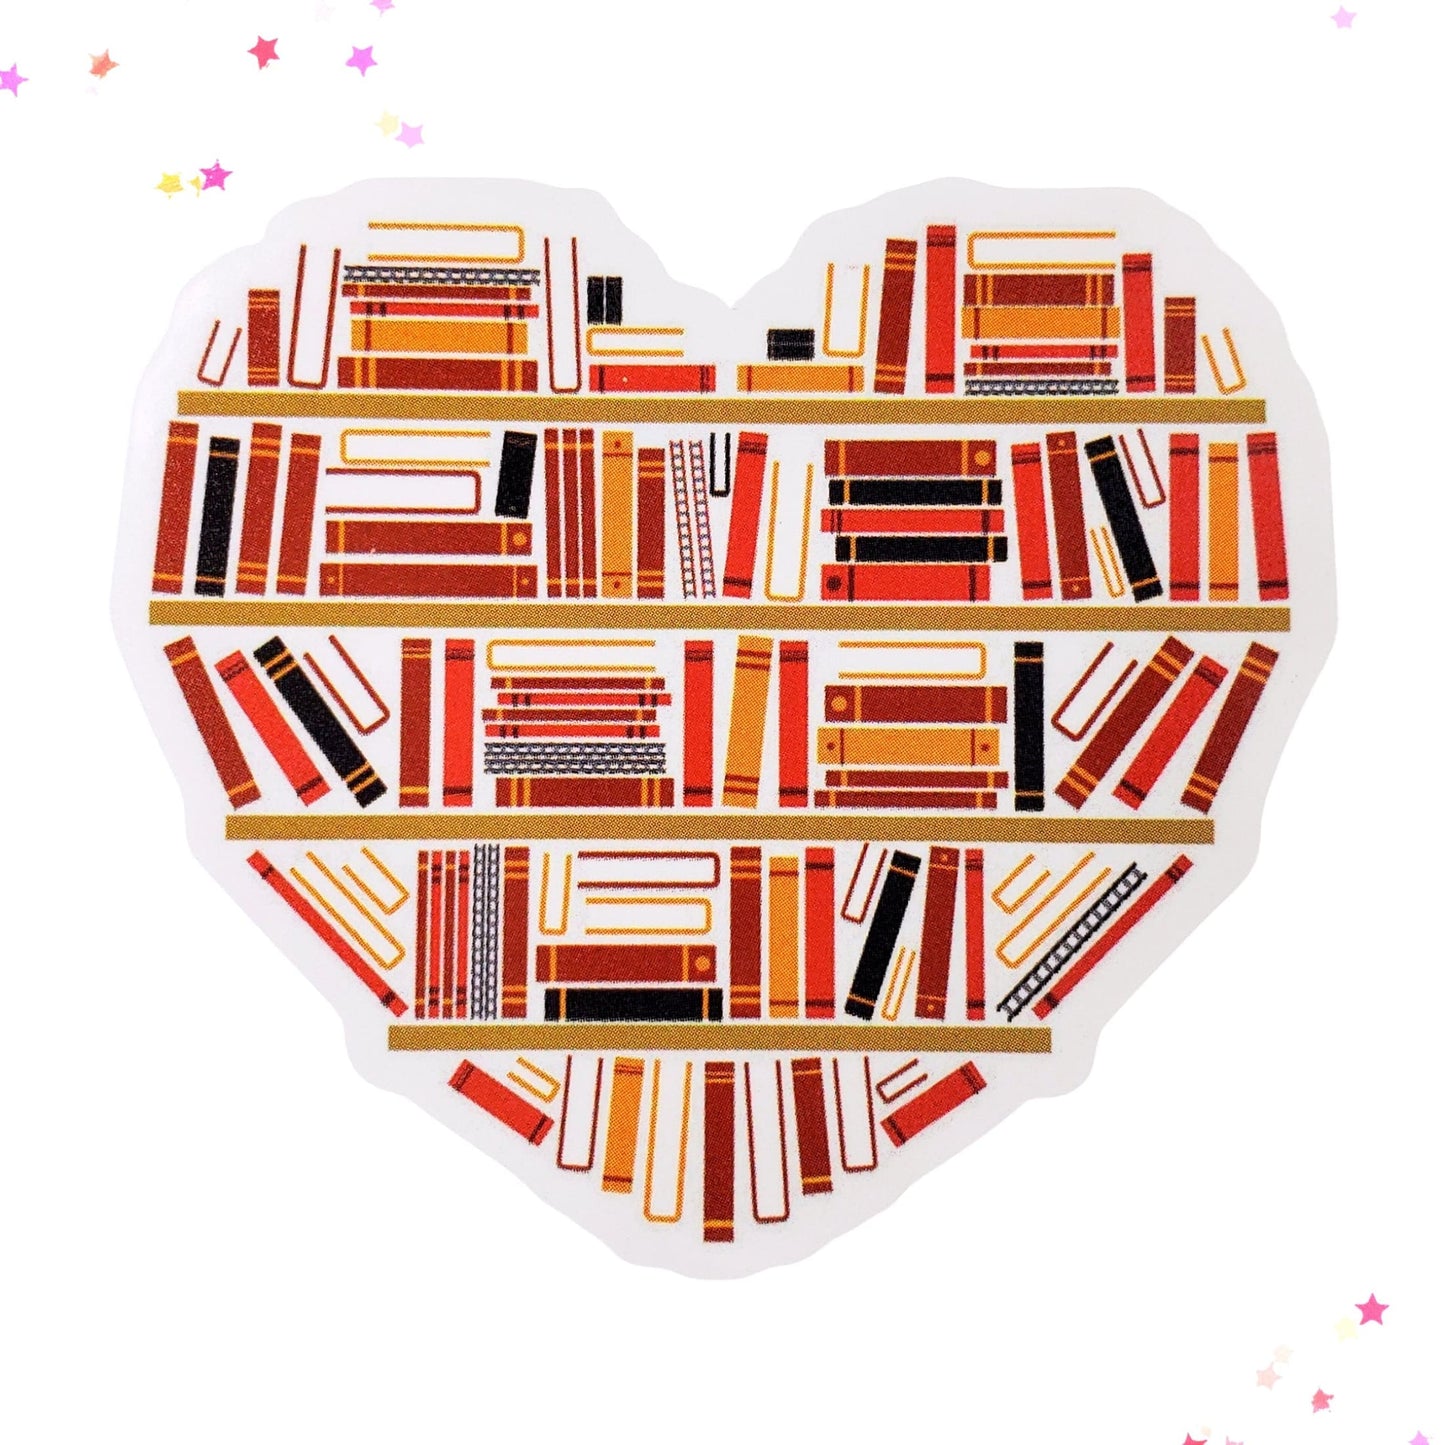 Heart-Shaped Bookshelf Waterproof Sticker from Confetti Kitty, Only 1.00